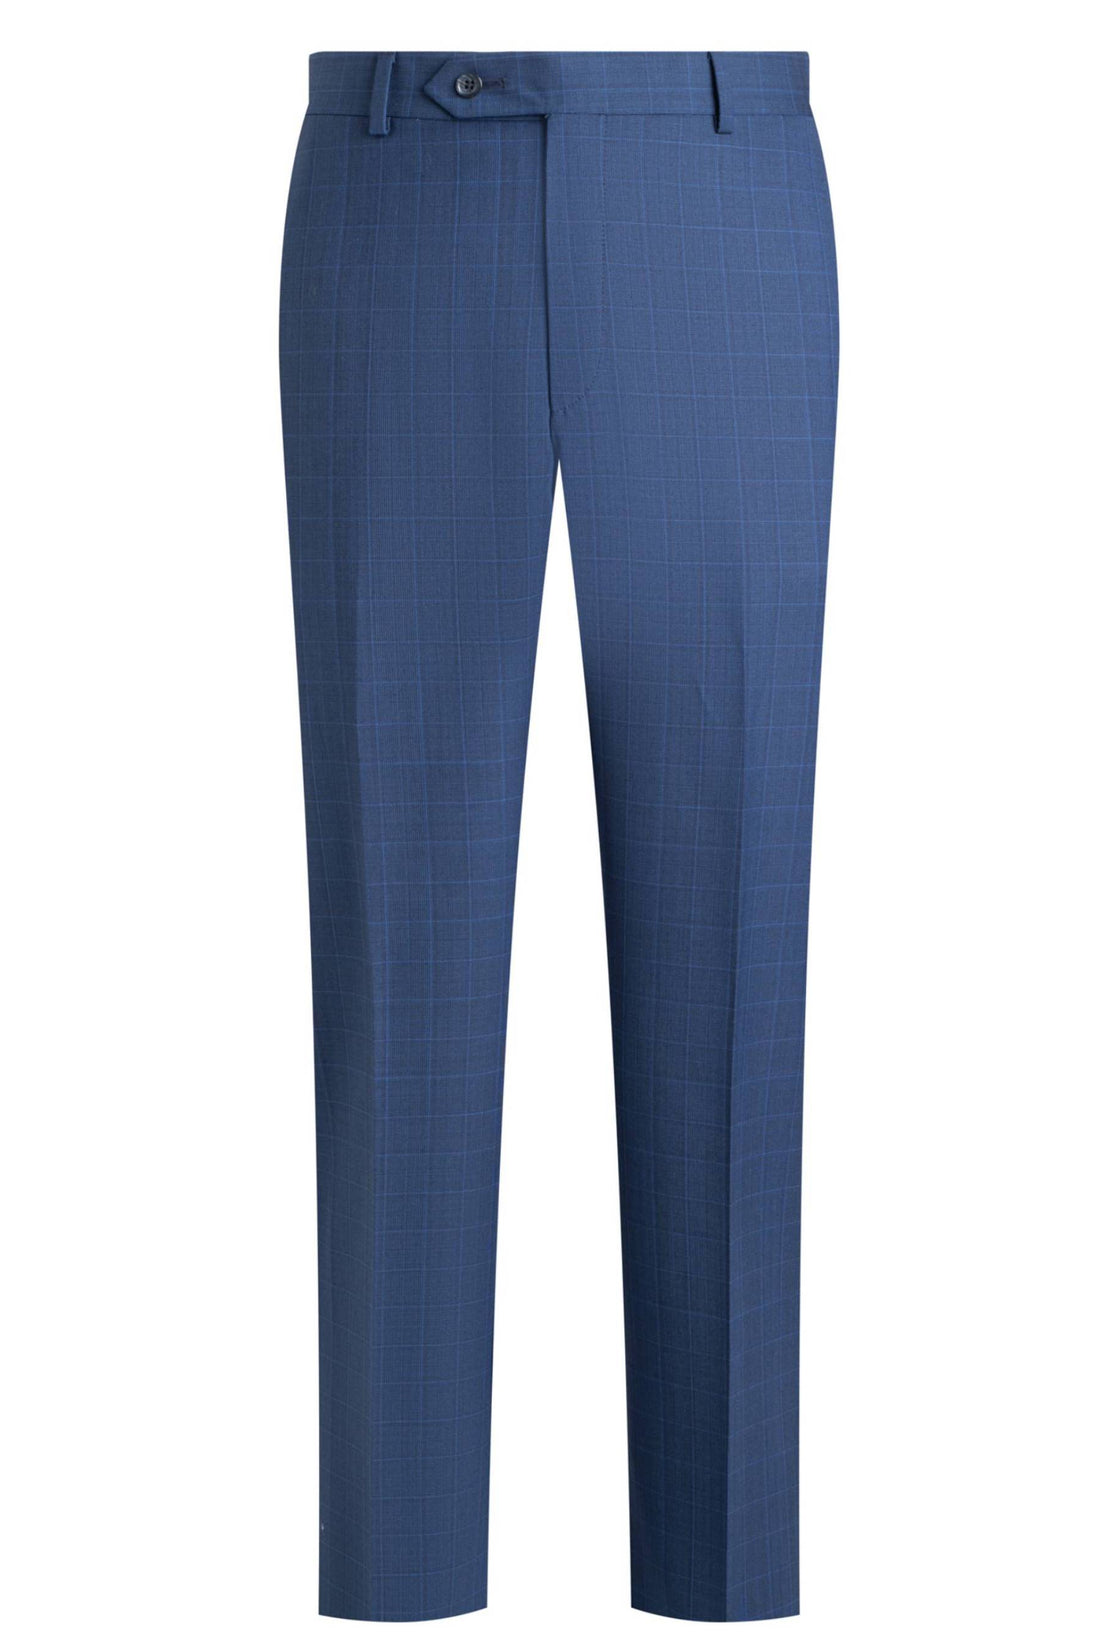 Samuelsohn Blue Glen Plaid Classic Suit Front Pant